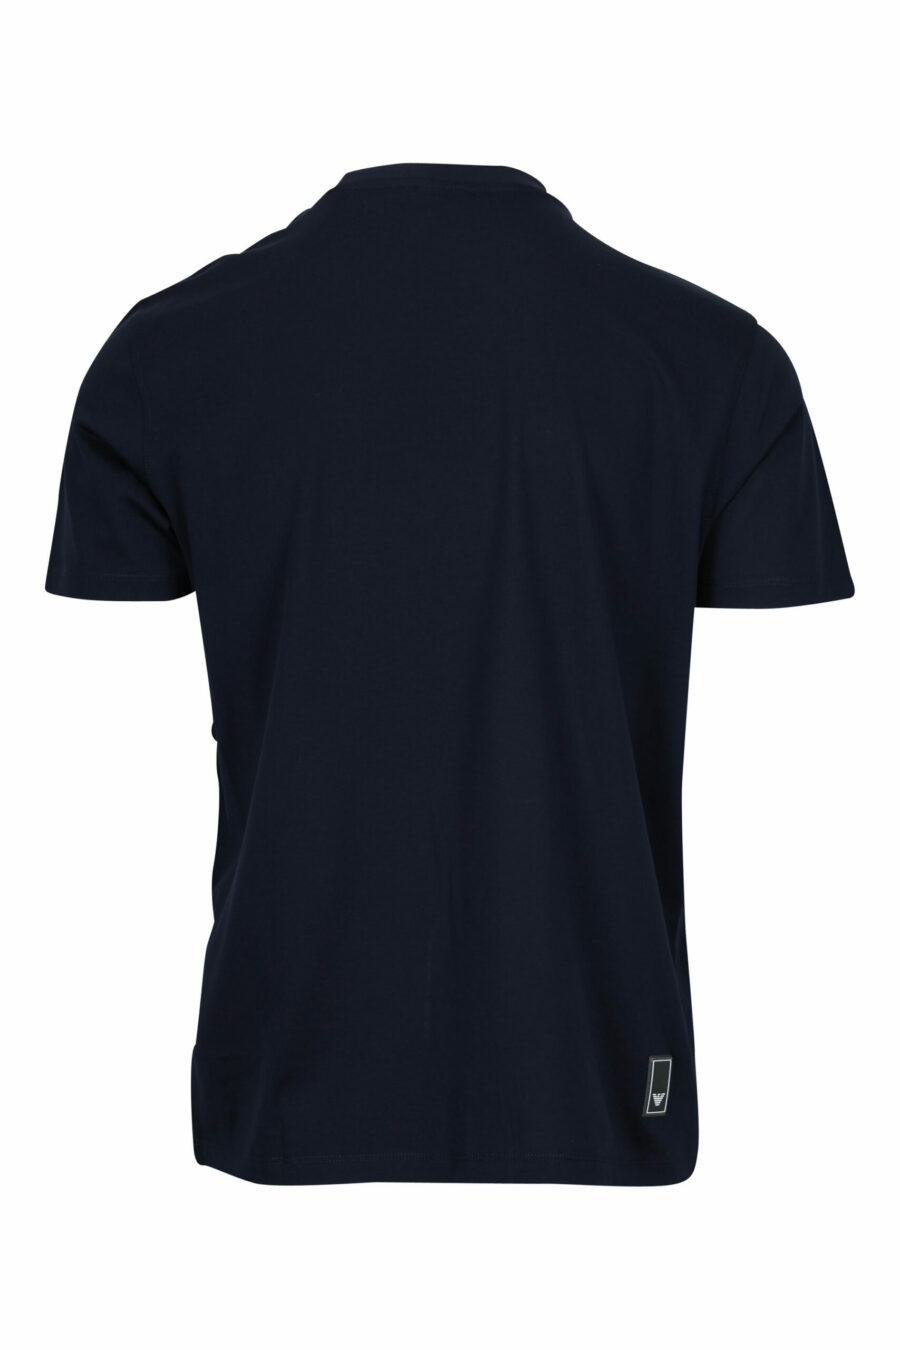 T-shirt bleu foncé avec minilogue de l'aigle - 8058997155687 à l'échelle 1